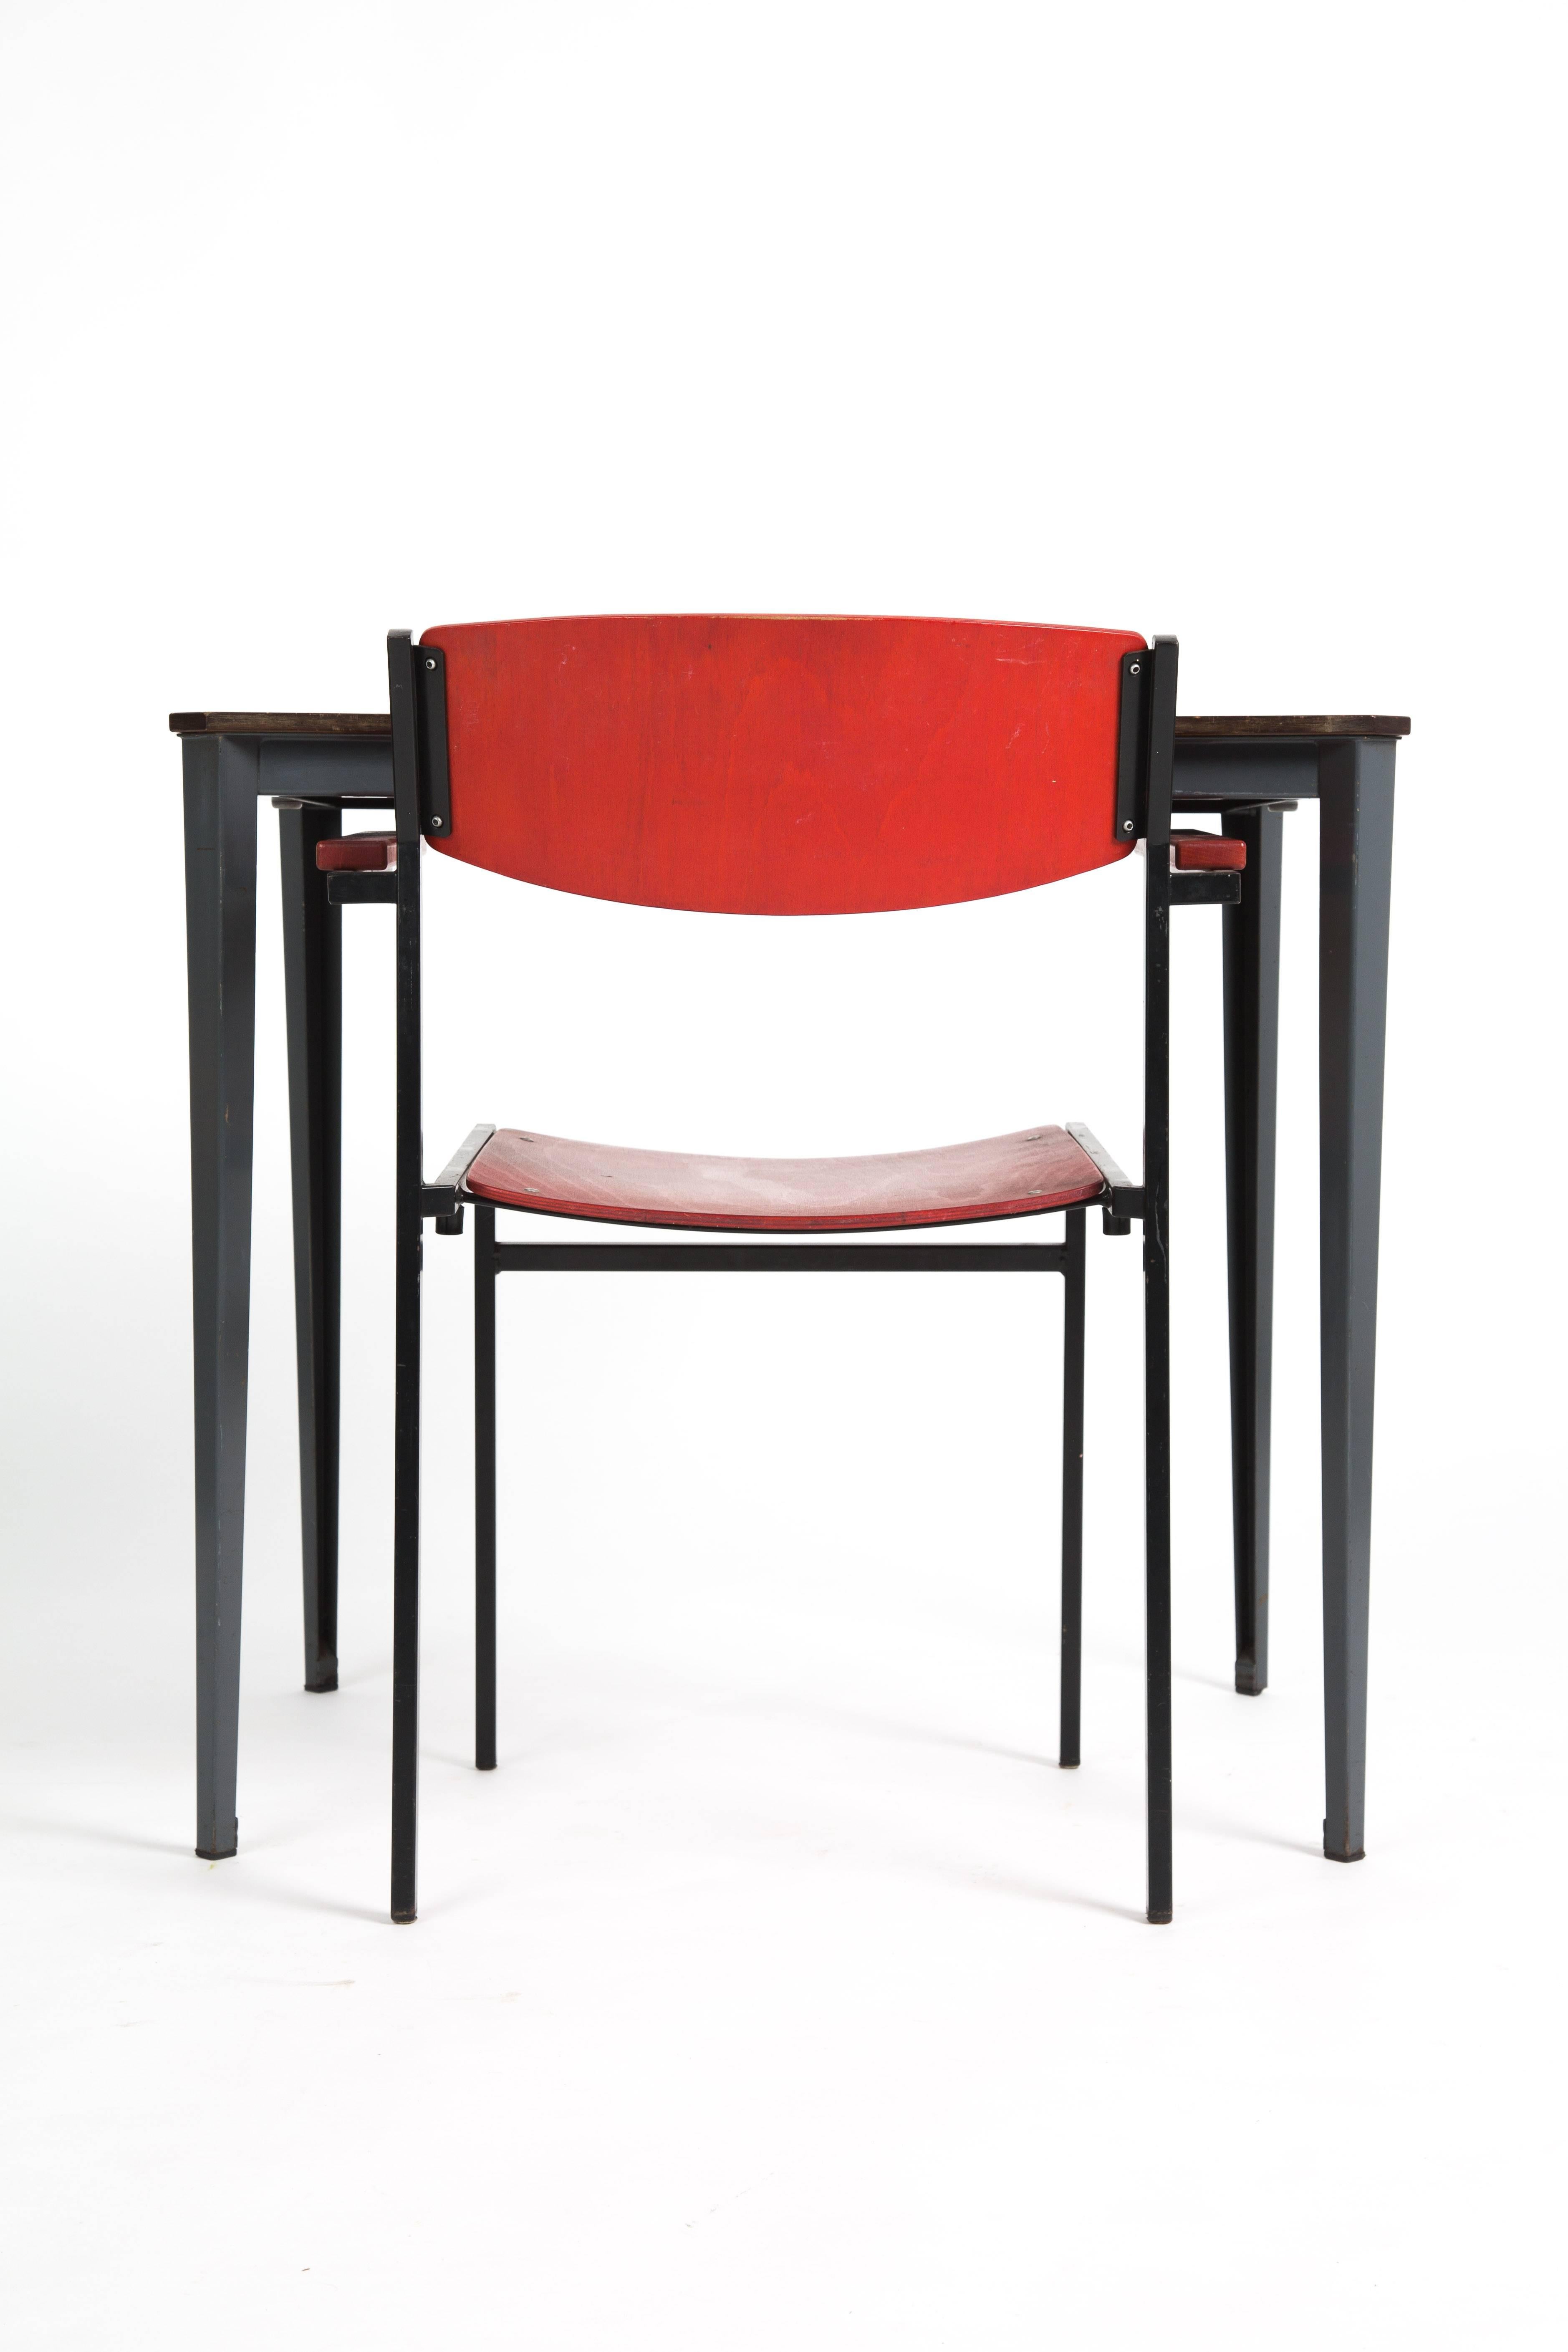 TABLE WIM RIETVELD Ahrend de Cirkel Industrial Dutch Design  For Sale 3